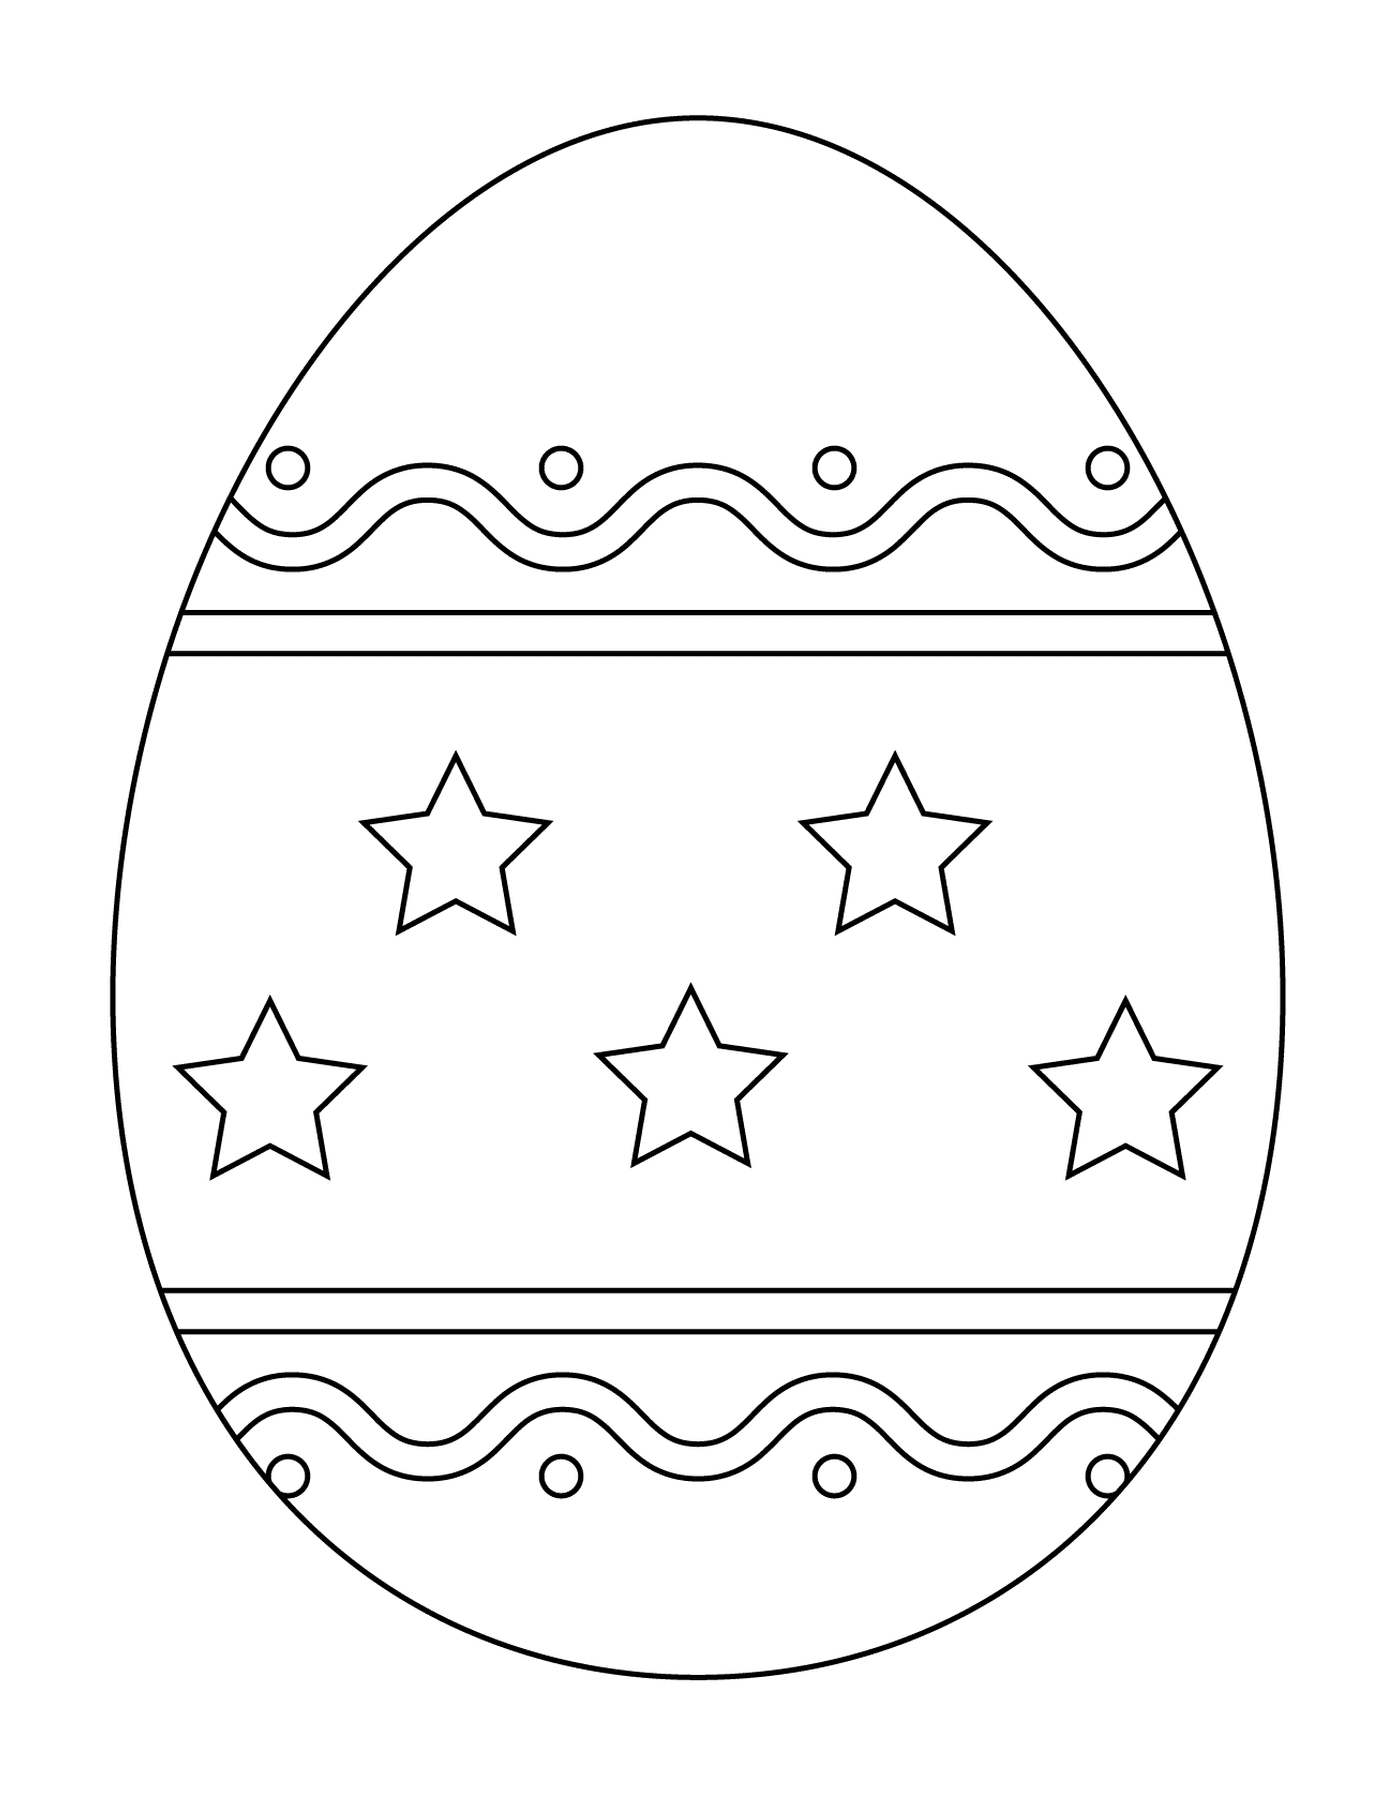  ईस्टर अंडे साधारण पैटर्न के साथ 